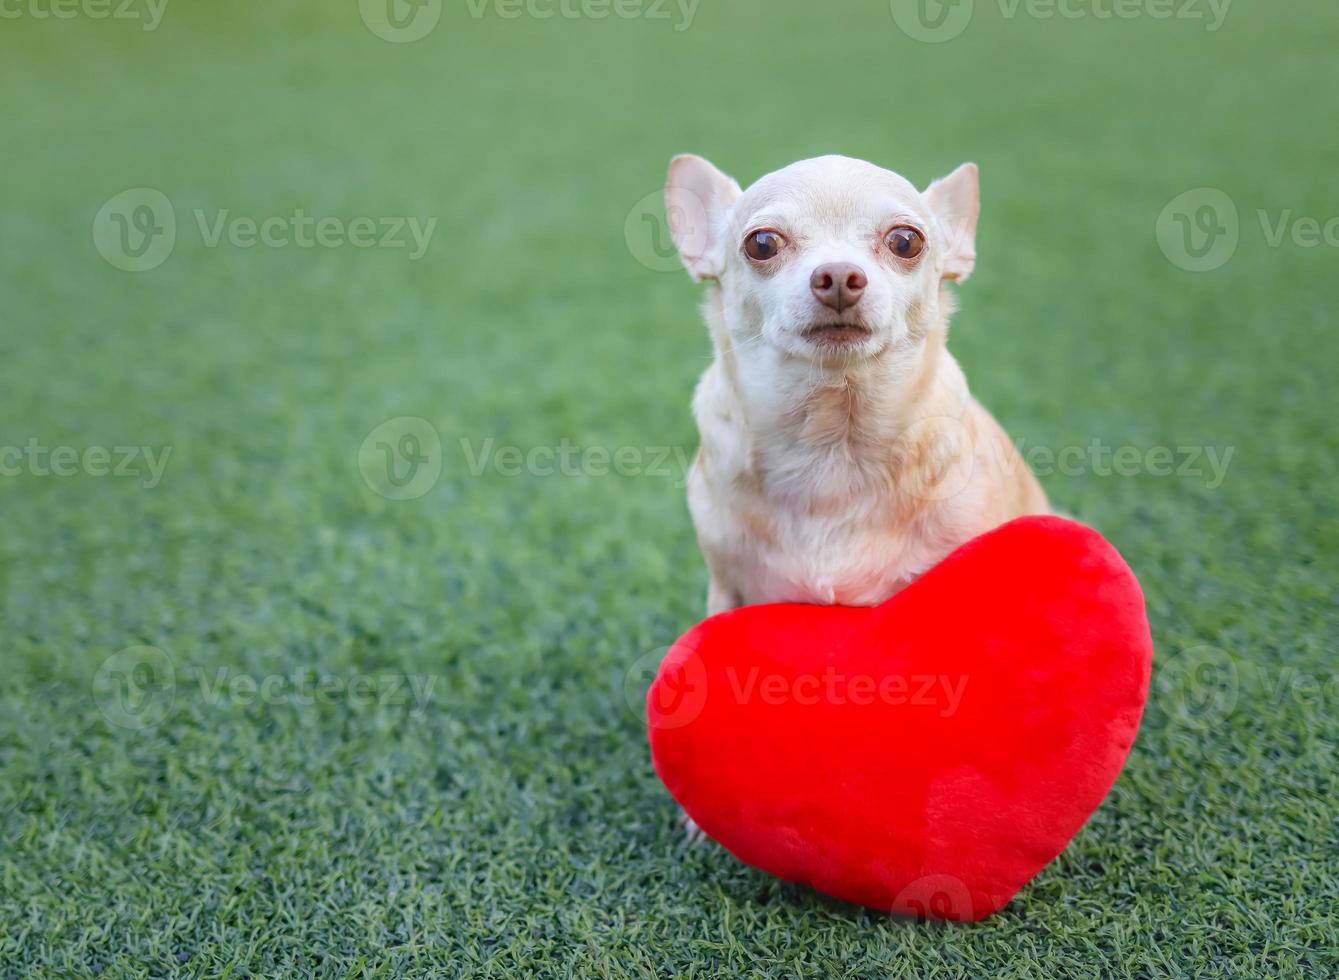 cachorros chihuahua marrons sentados com travesseiro de forma de coração vermelho na grama verde, sorrindo e olhando para a câmera. conceito de dia dos namorados. foto